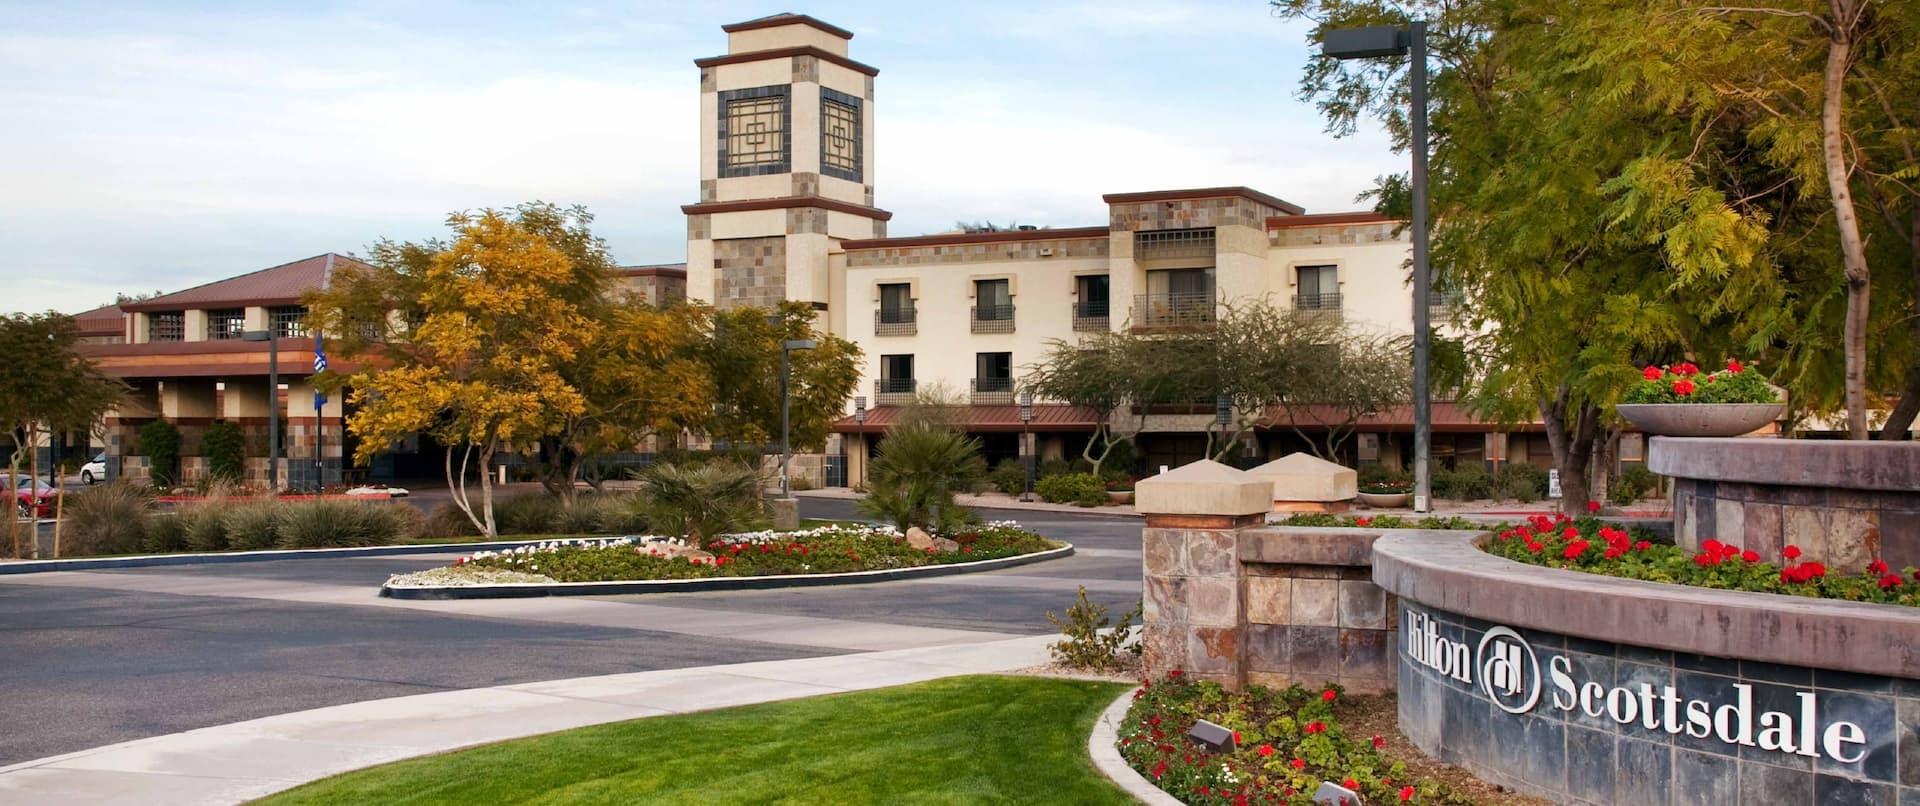 Photo of Hilton Scottsdale Resort & Villas, Scottsdale, AZ